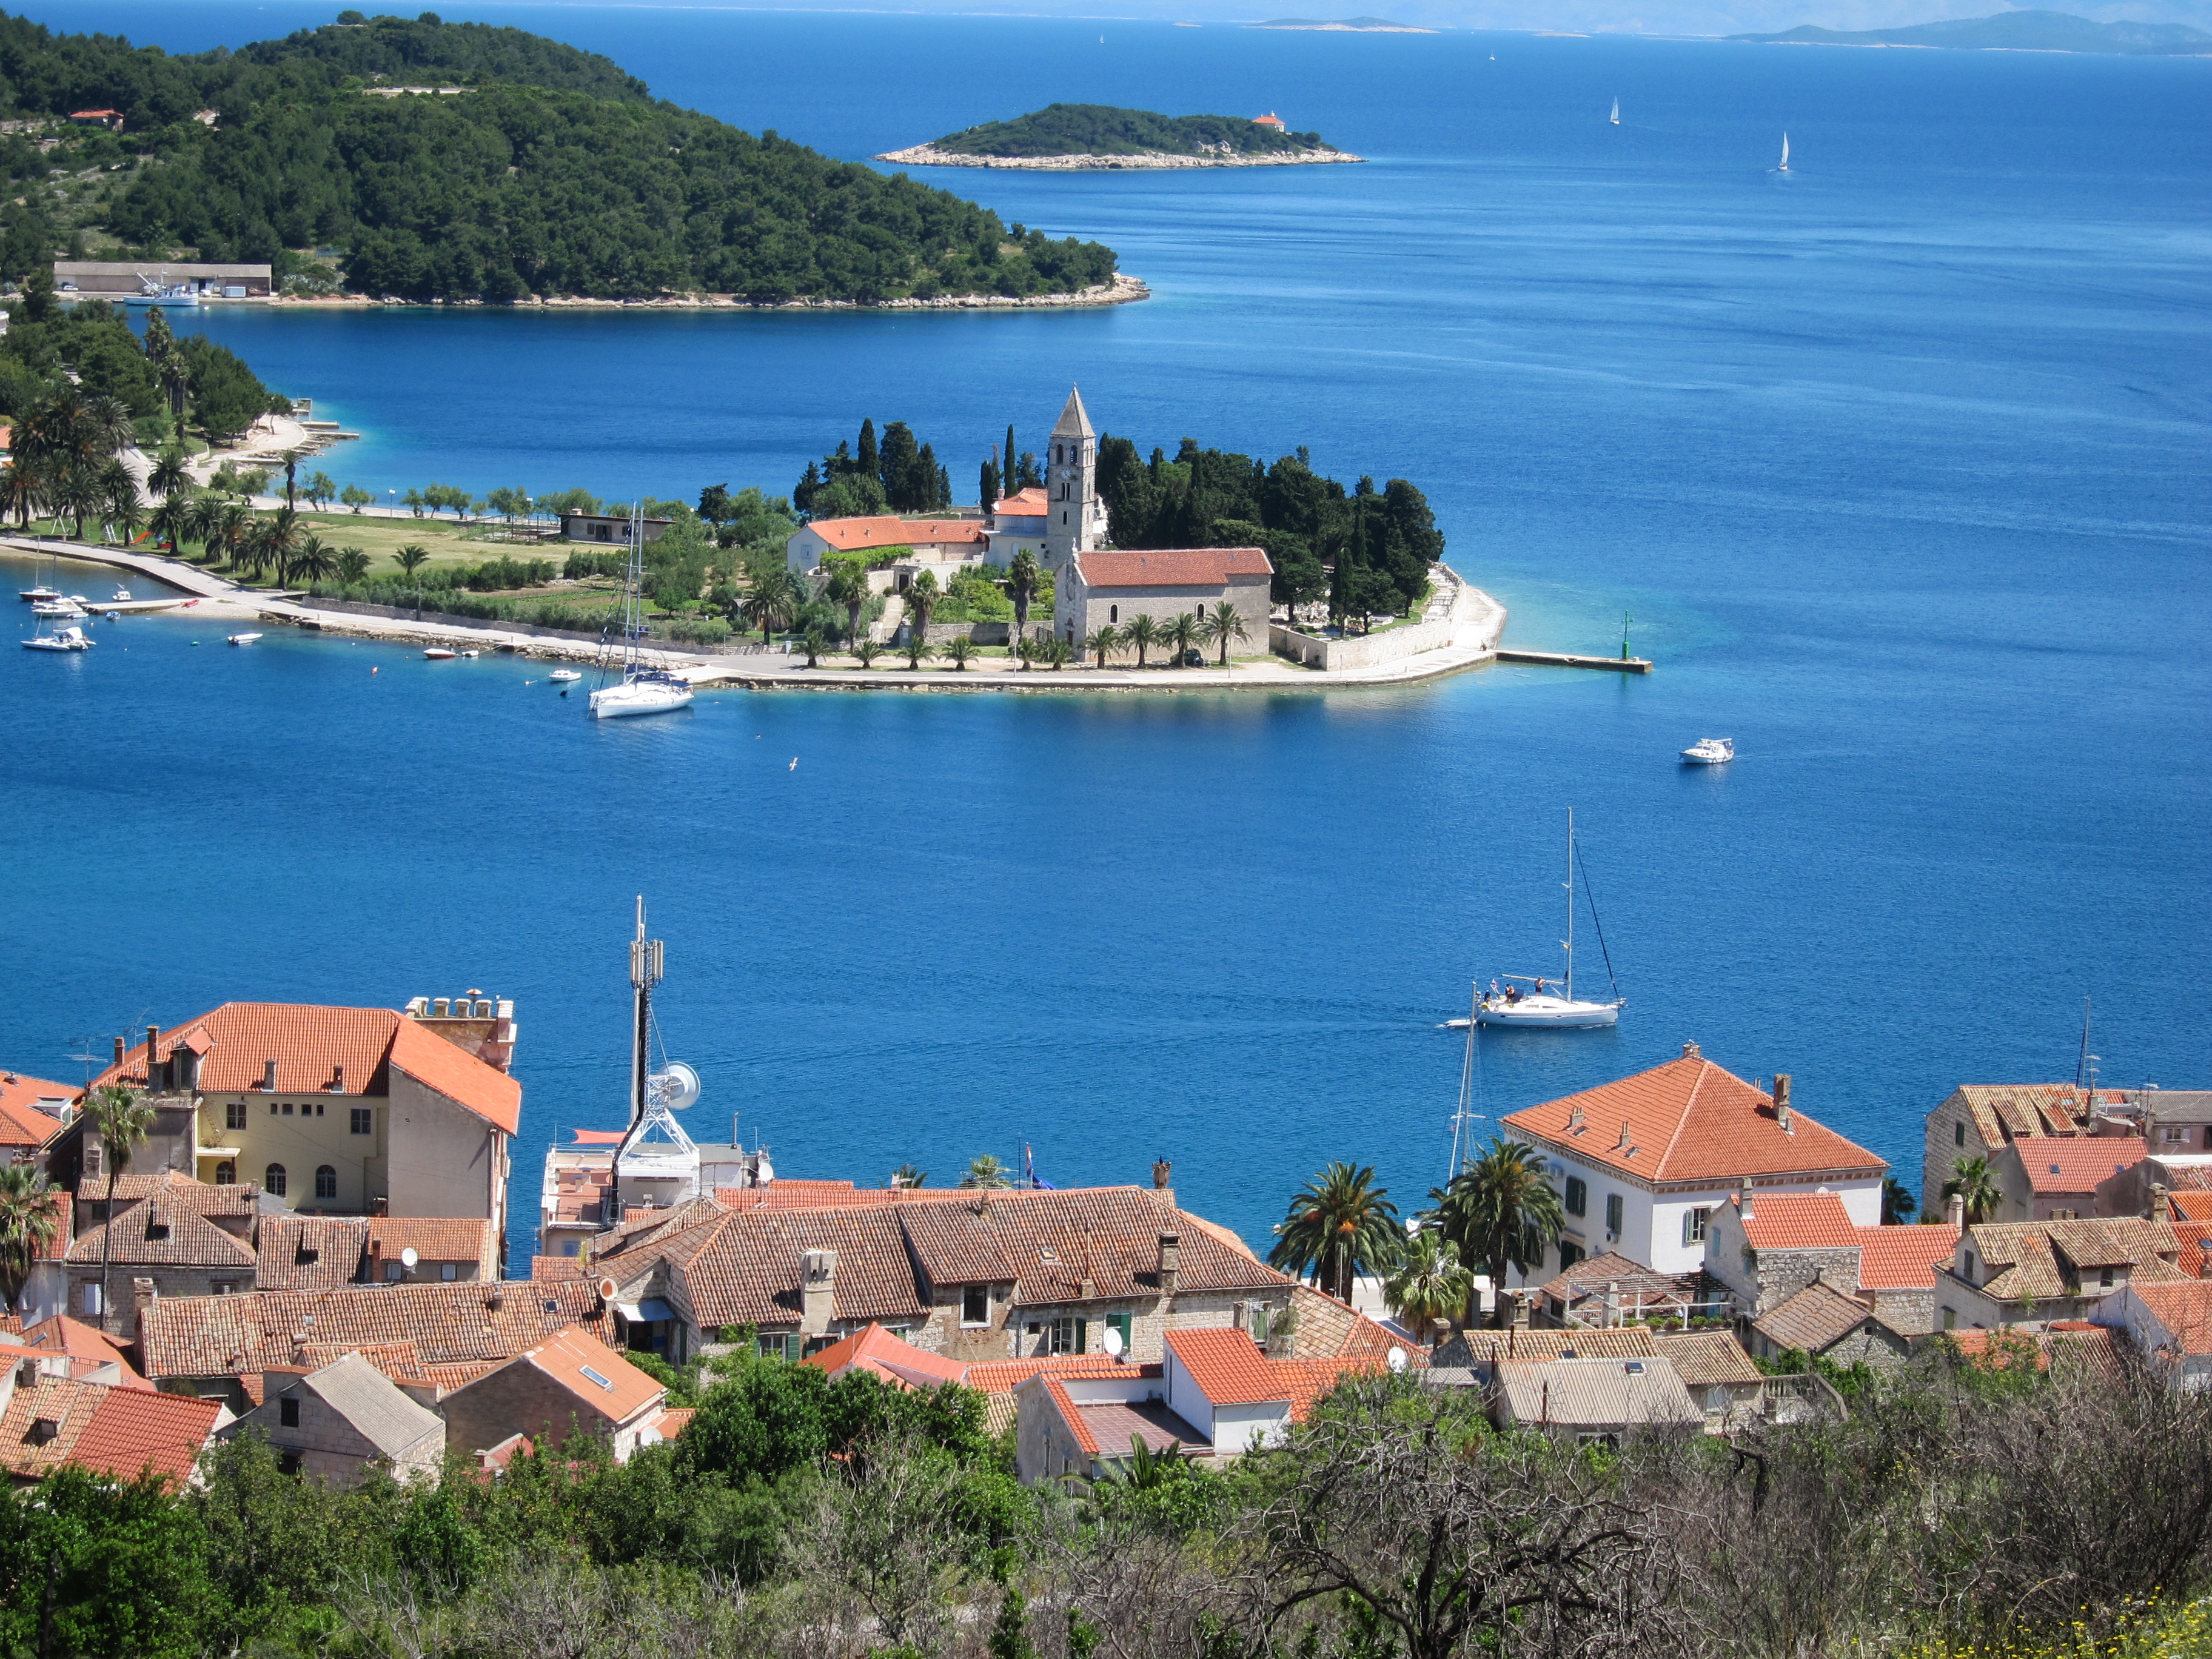 Croatia dalmatia islands bike tour ocean view